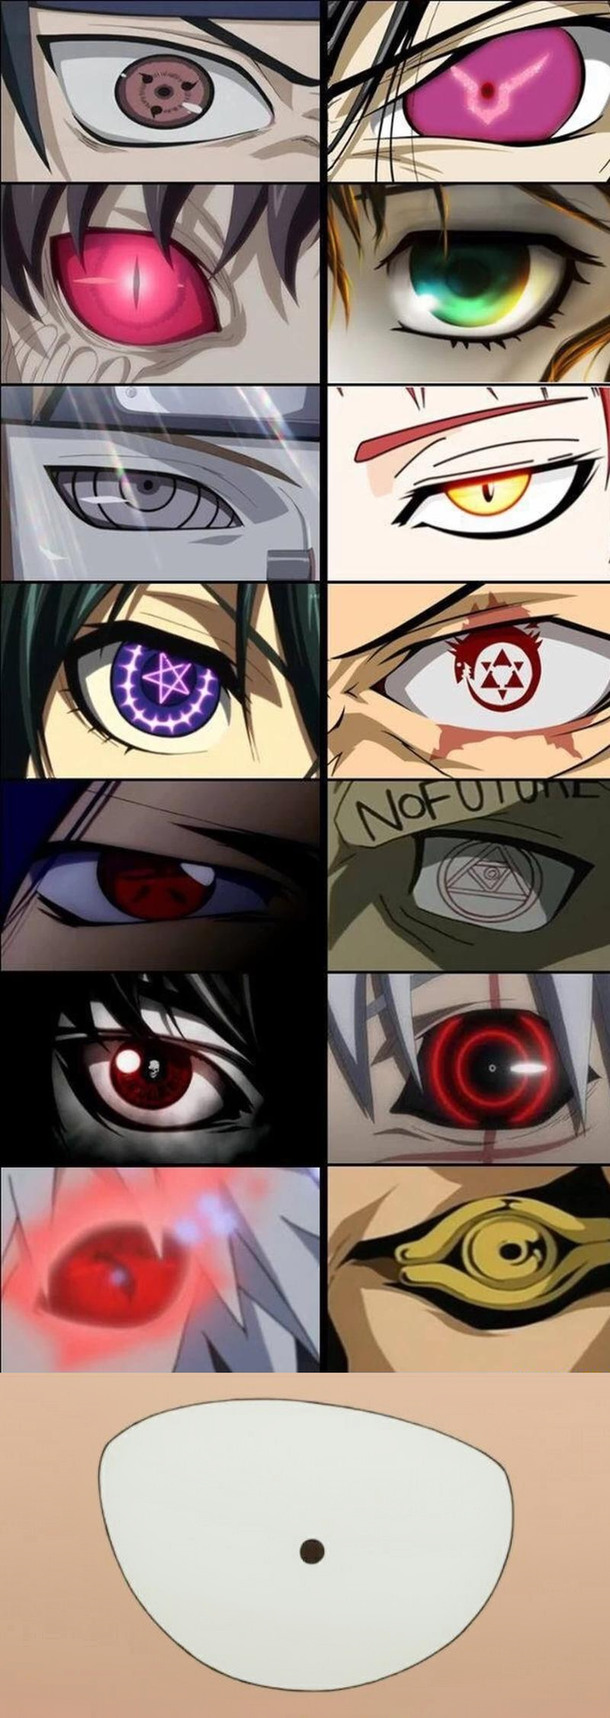 Strongest eyes in Anime - meme